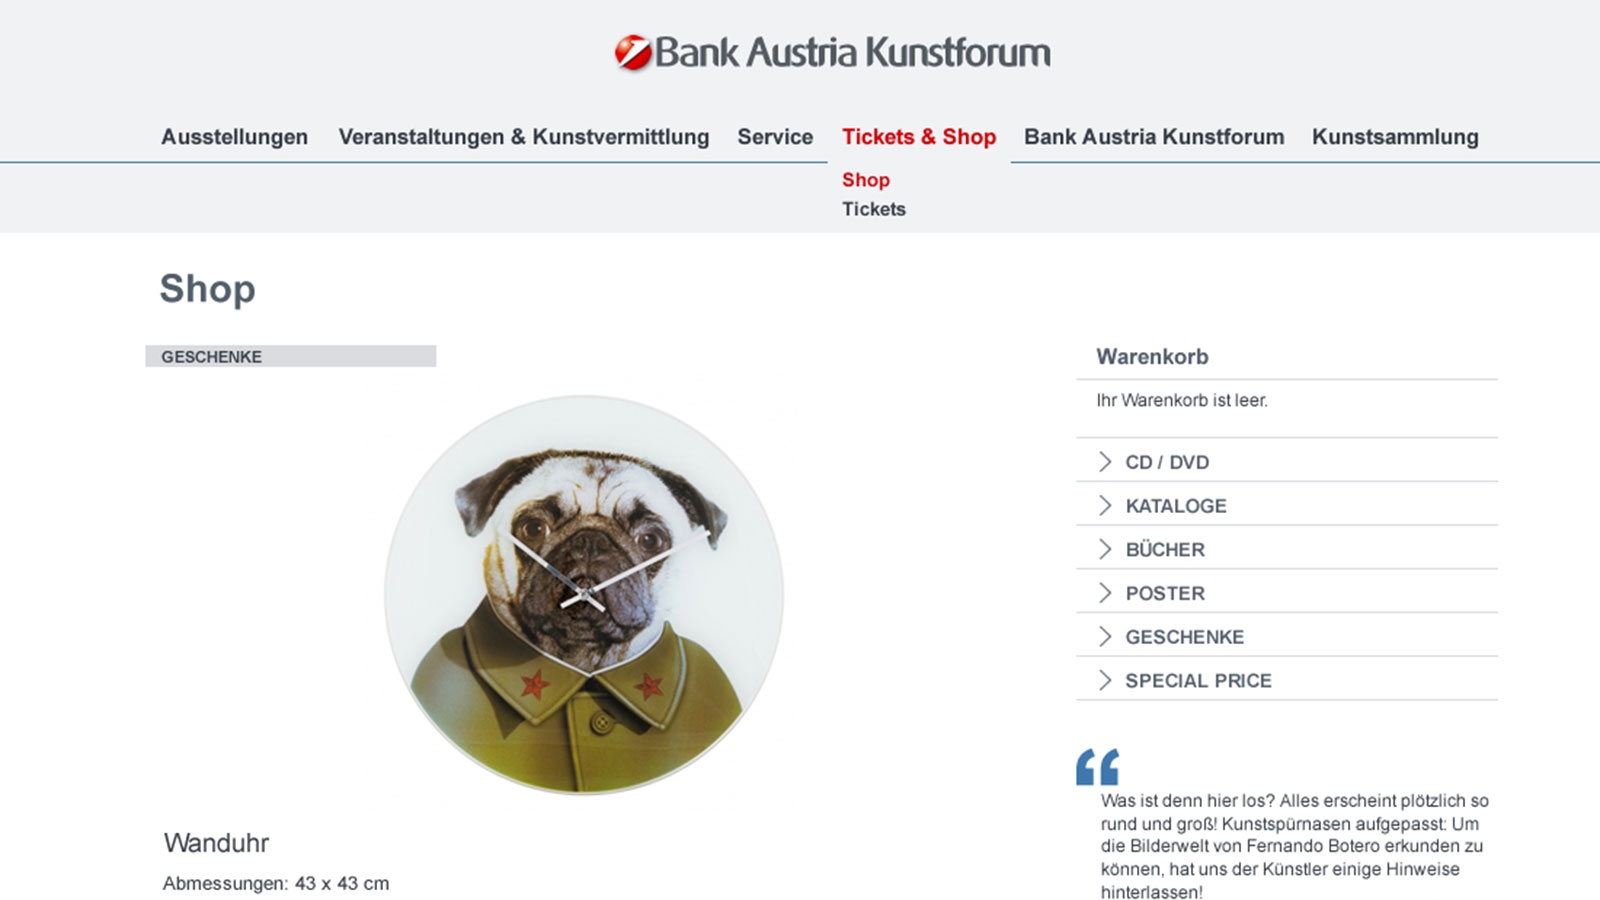 Bank Austria Kunstforum | bankaustria-kunstforum.at | 2012 (Screen Only 05) © echonet communication / Auftraggeber